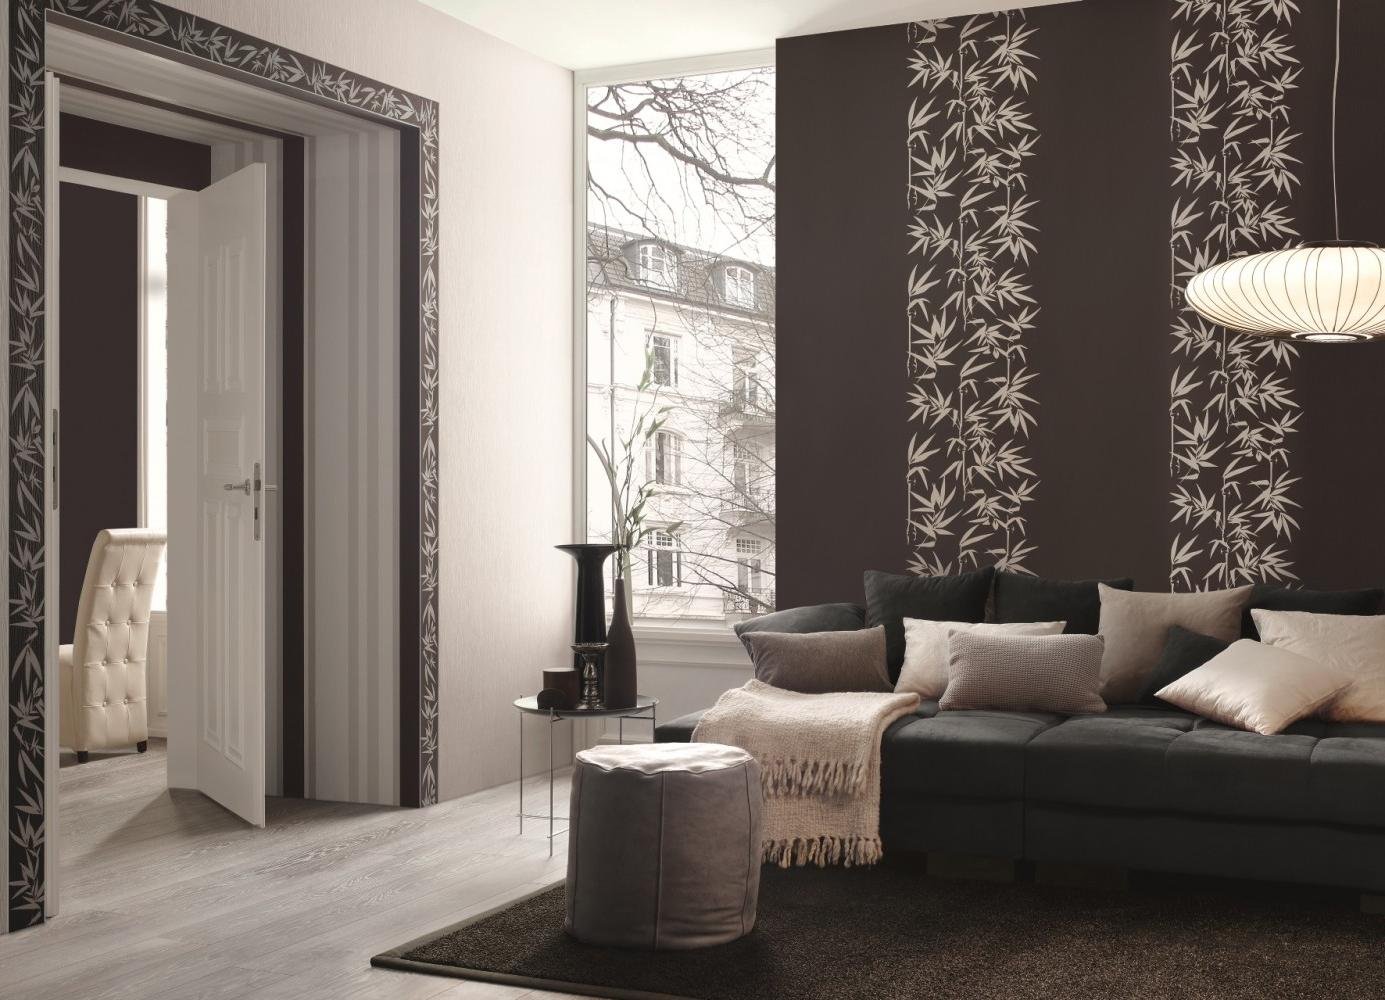 Обои в зал комбинированные 2020 фото дизайн: в квартире, как красиво подобрать, разные сочетания для стен